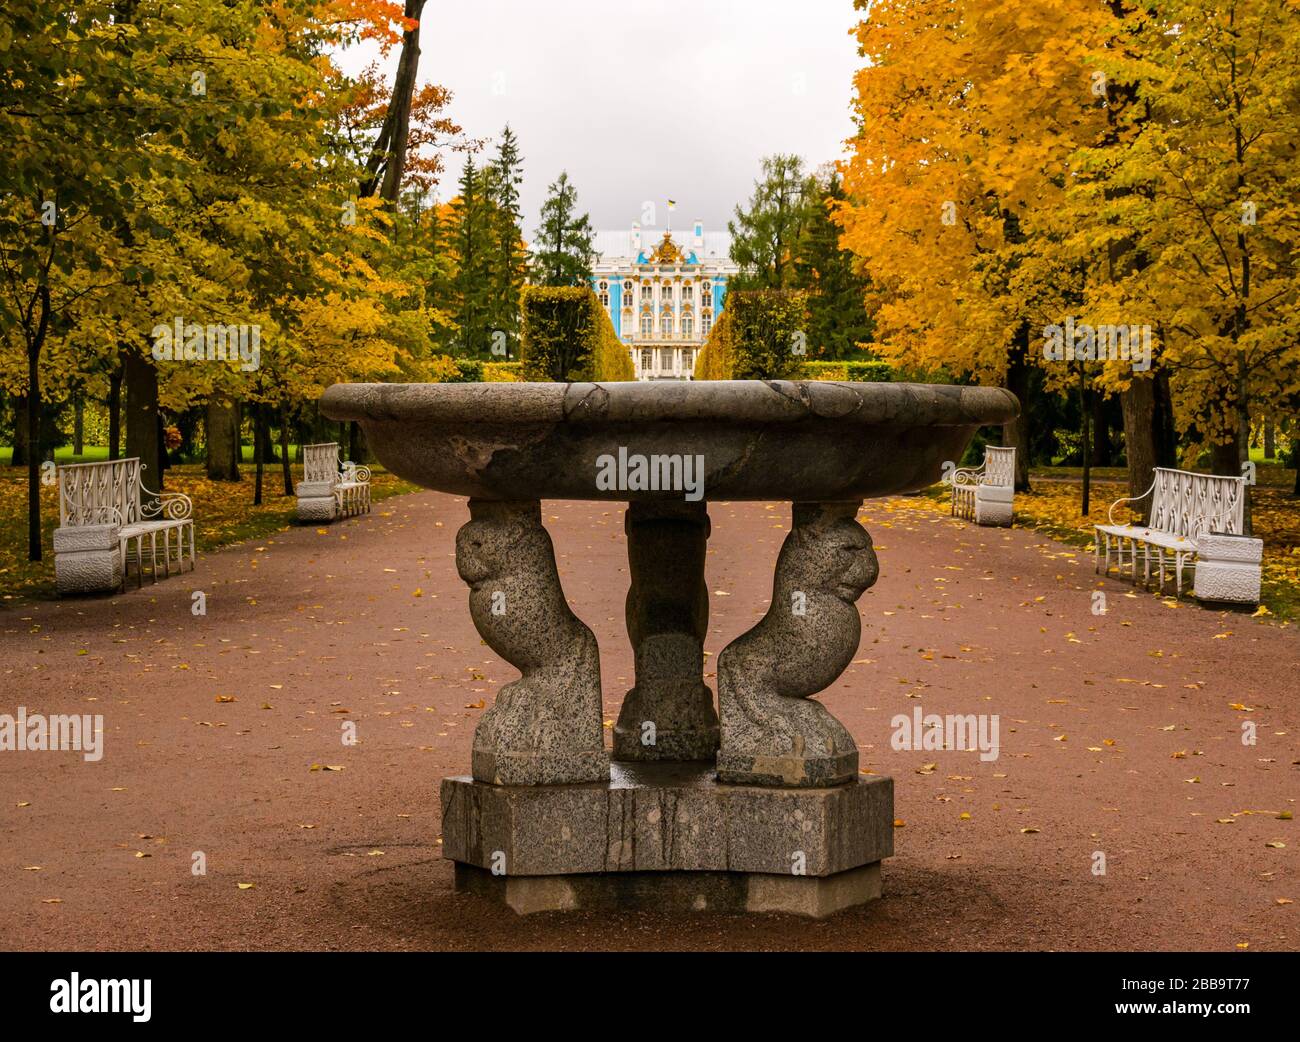 Viale con fontana che conduce al Palazzo di Caterina con alberi d'autunno, Tsars Village, Tsarskoe Selo, Pushkin, Federazione russa Foto Stock